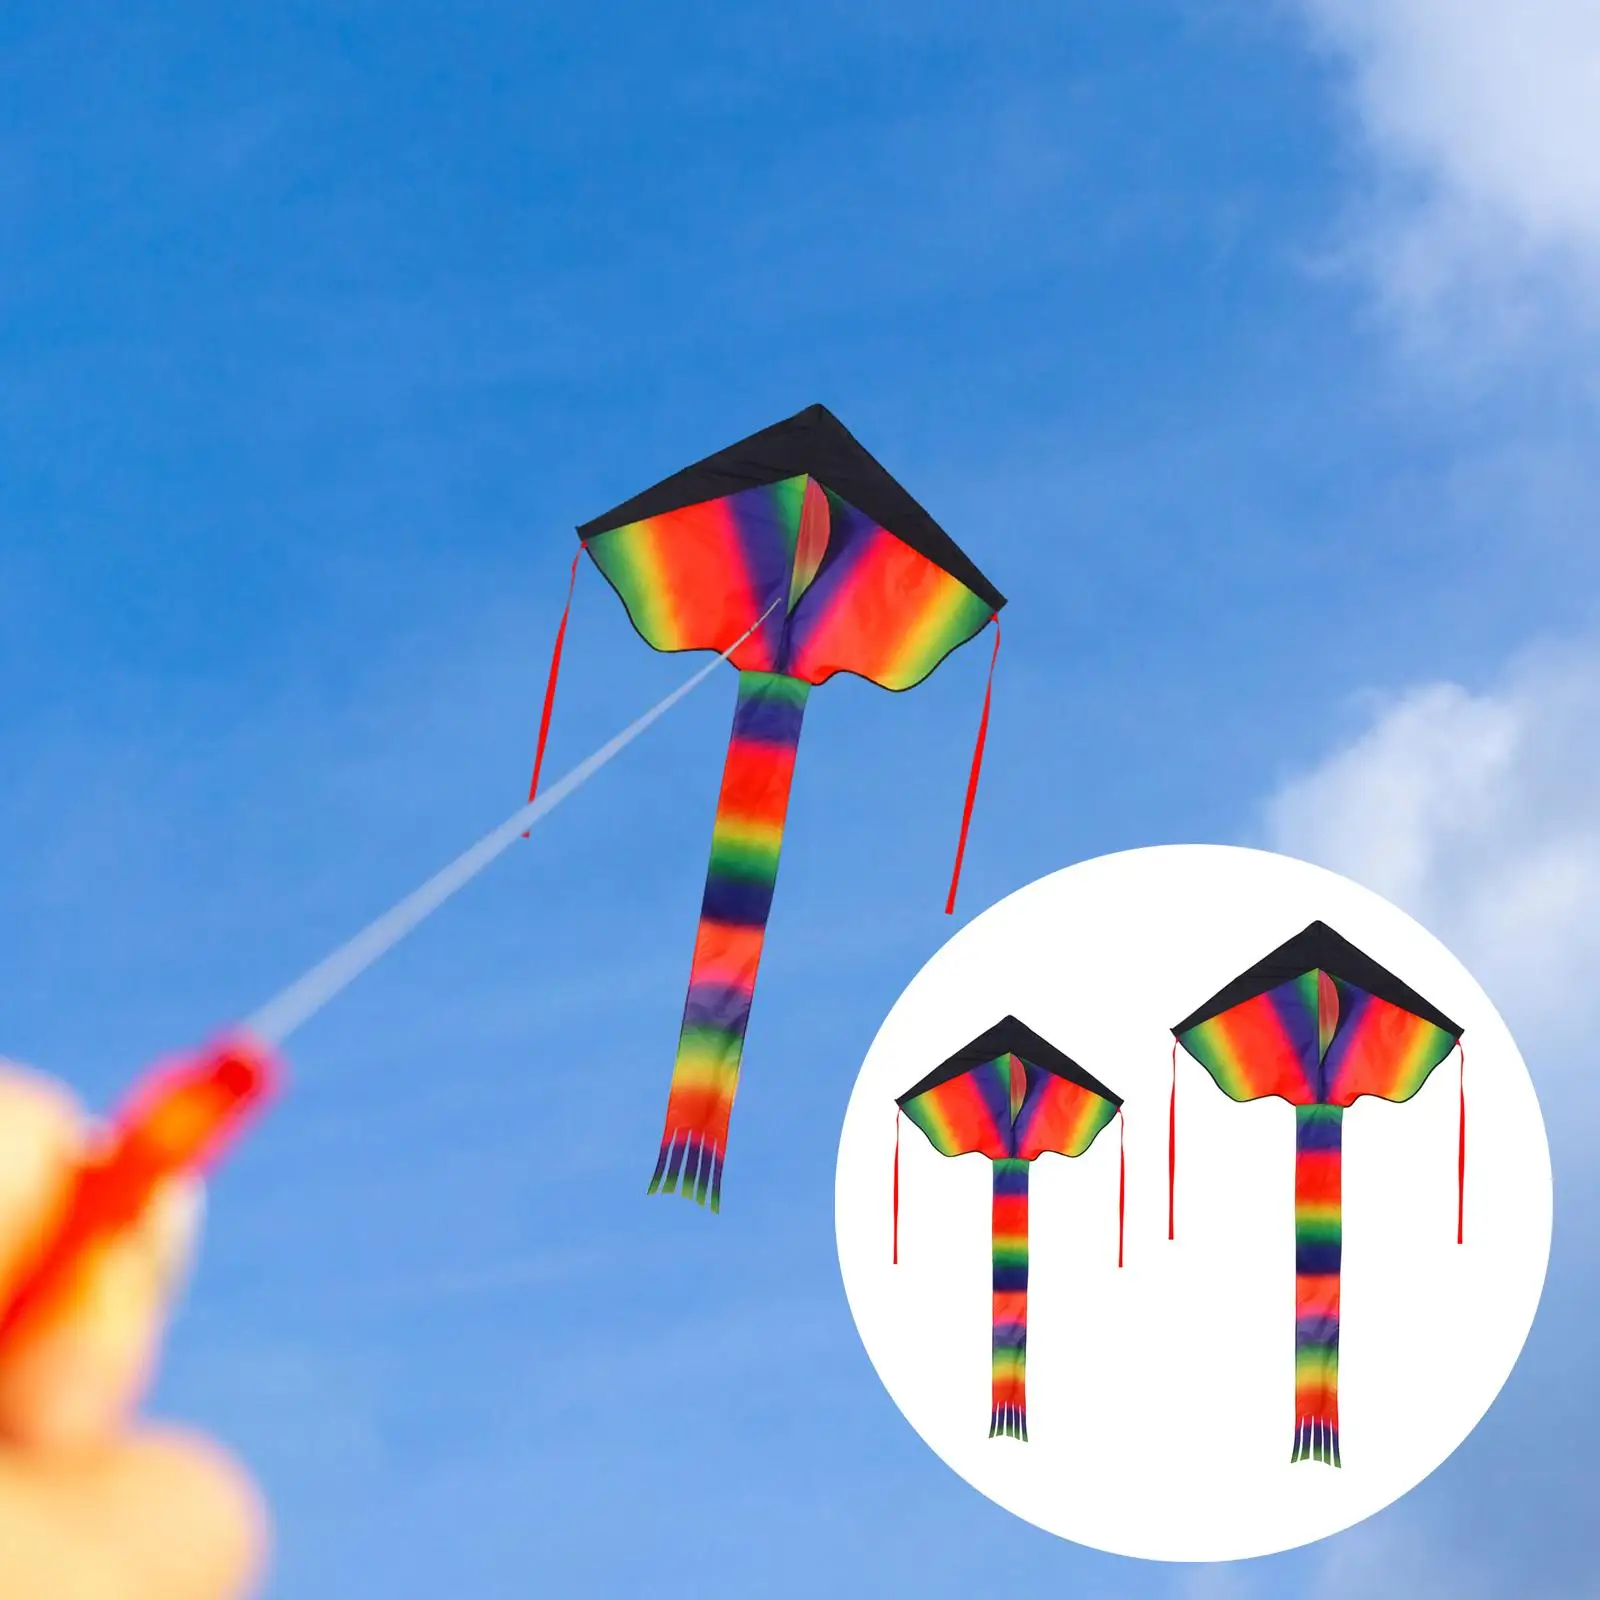 

Летающий змей Delta Kites, яркие летающие игрушки, большой воздушный змей с длинным хвостом, 1 ширина, для начинающих подростков, для активного отдыха